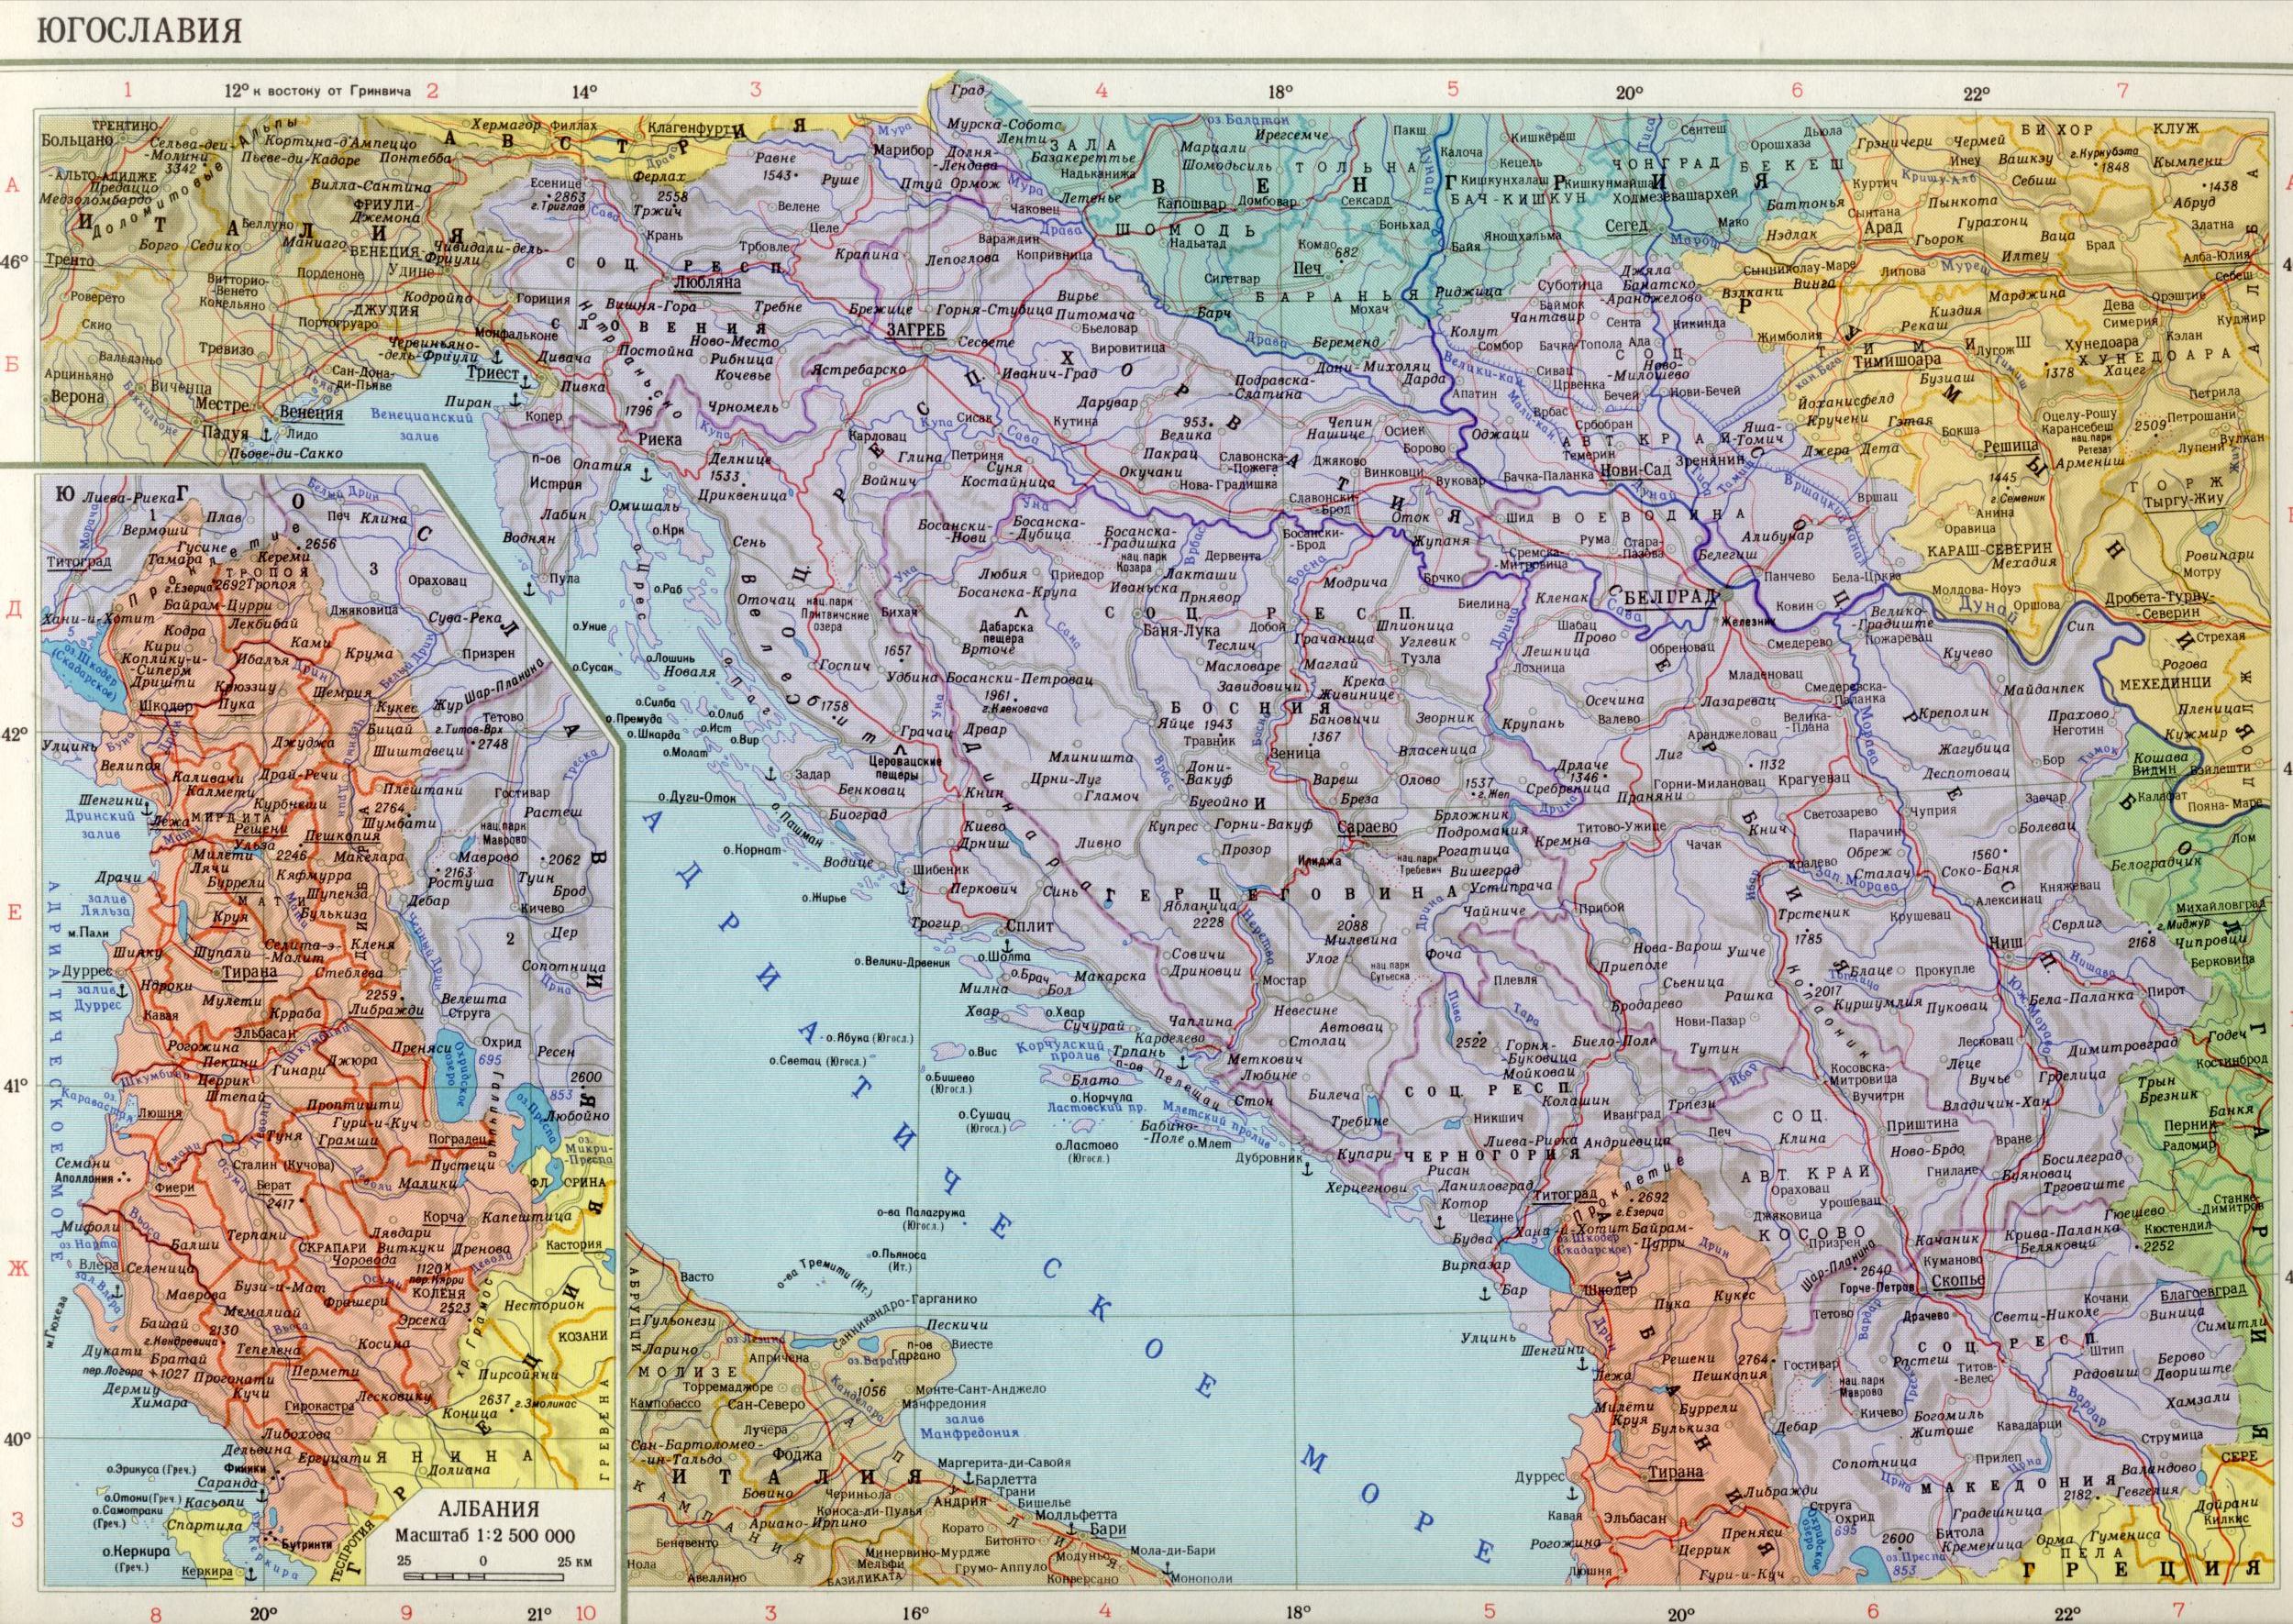 Карта Югославии 1988 1см=13,5км. Скачать бесплатно карты Европы политические